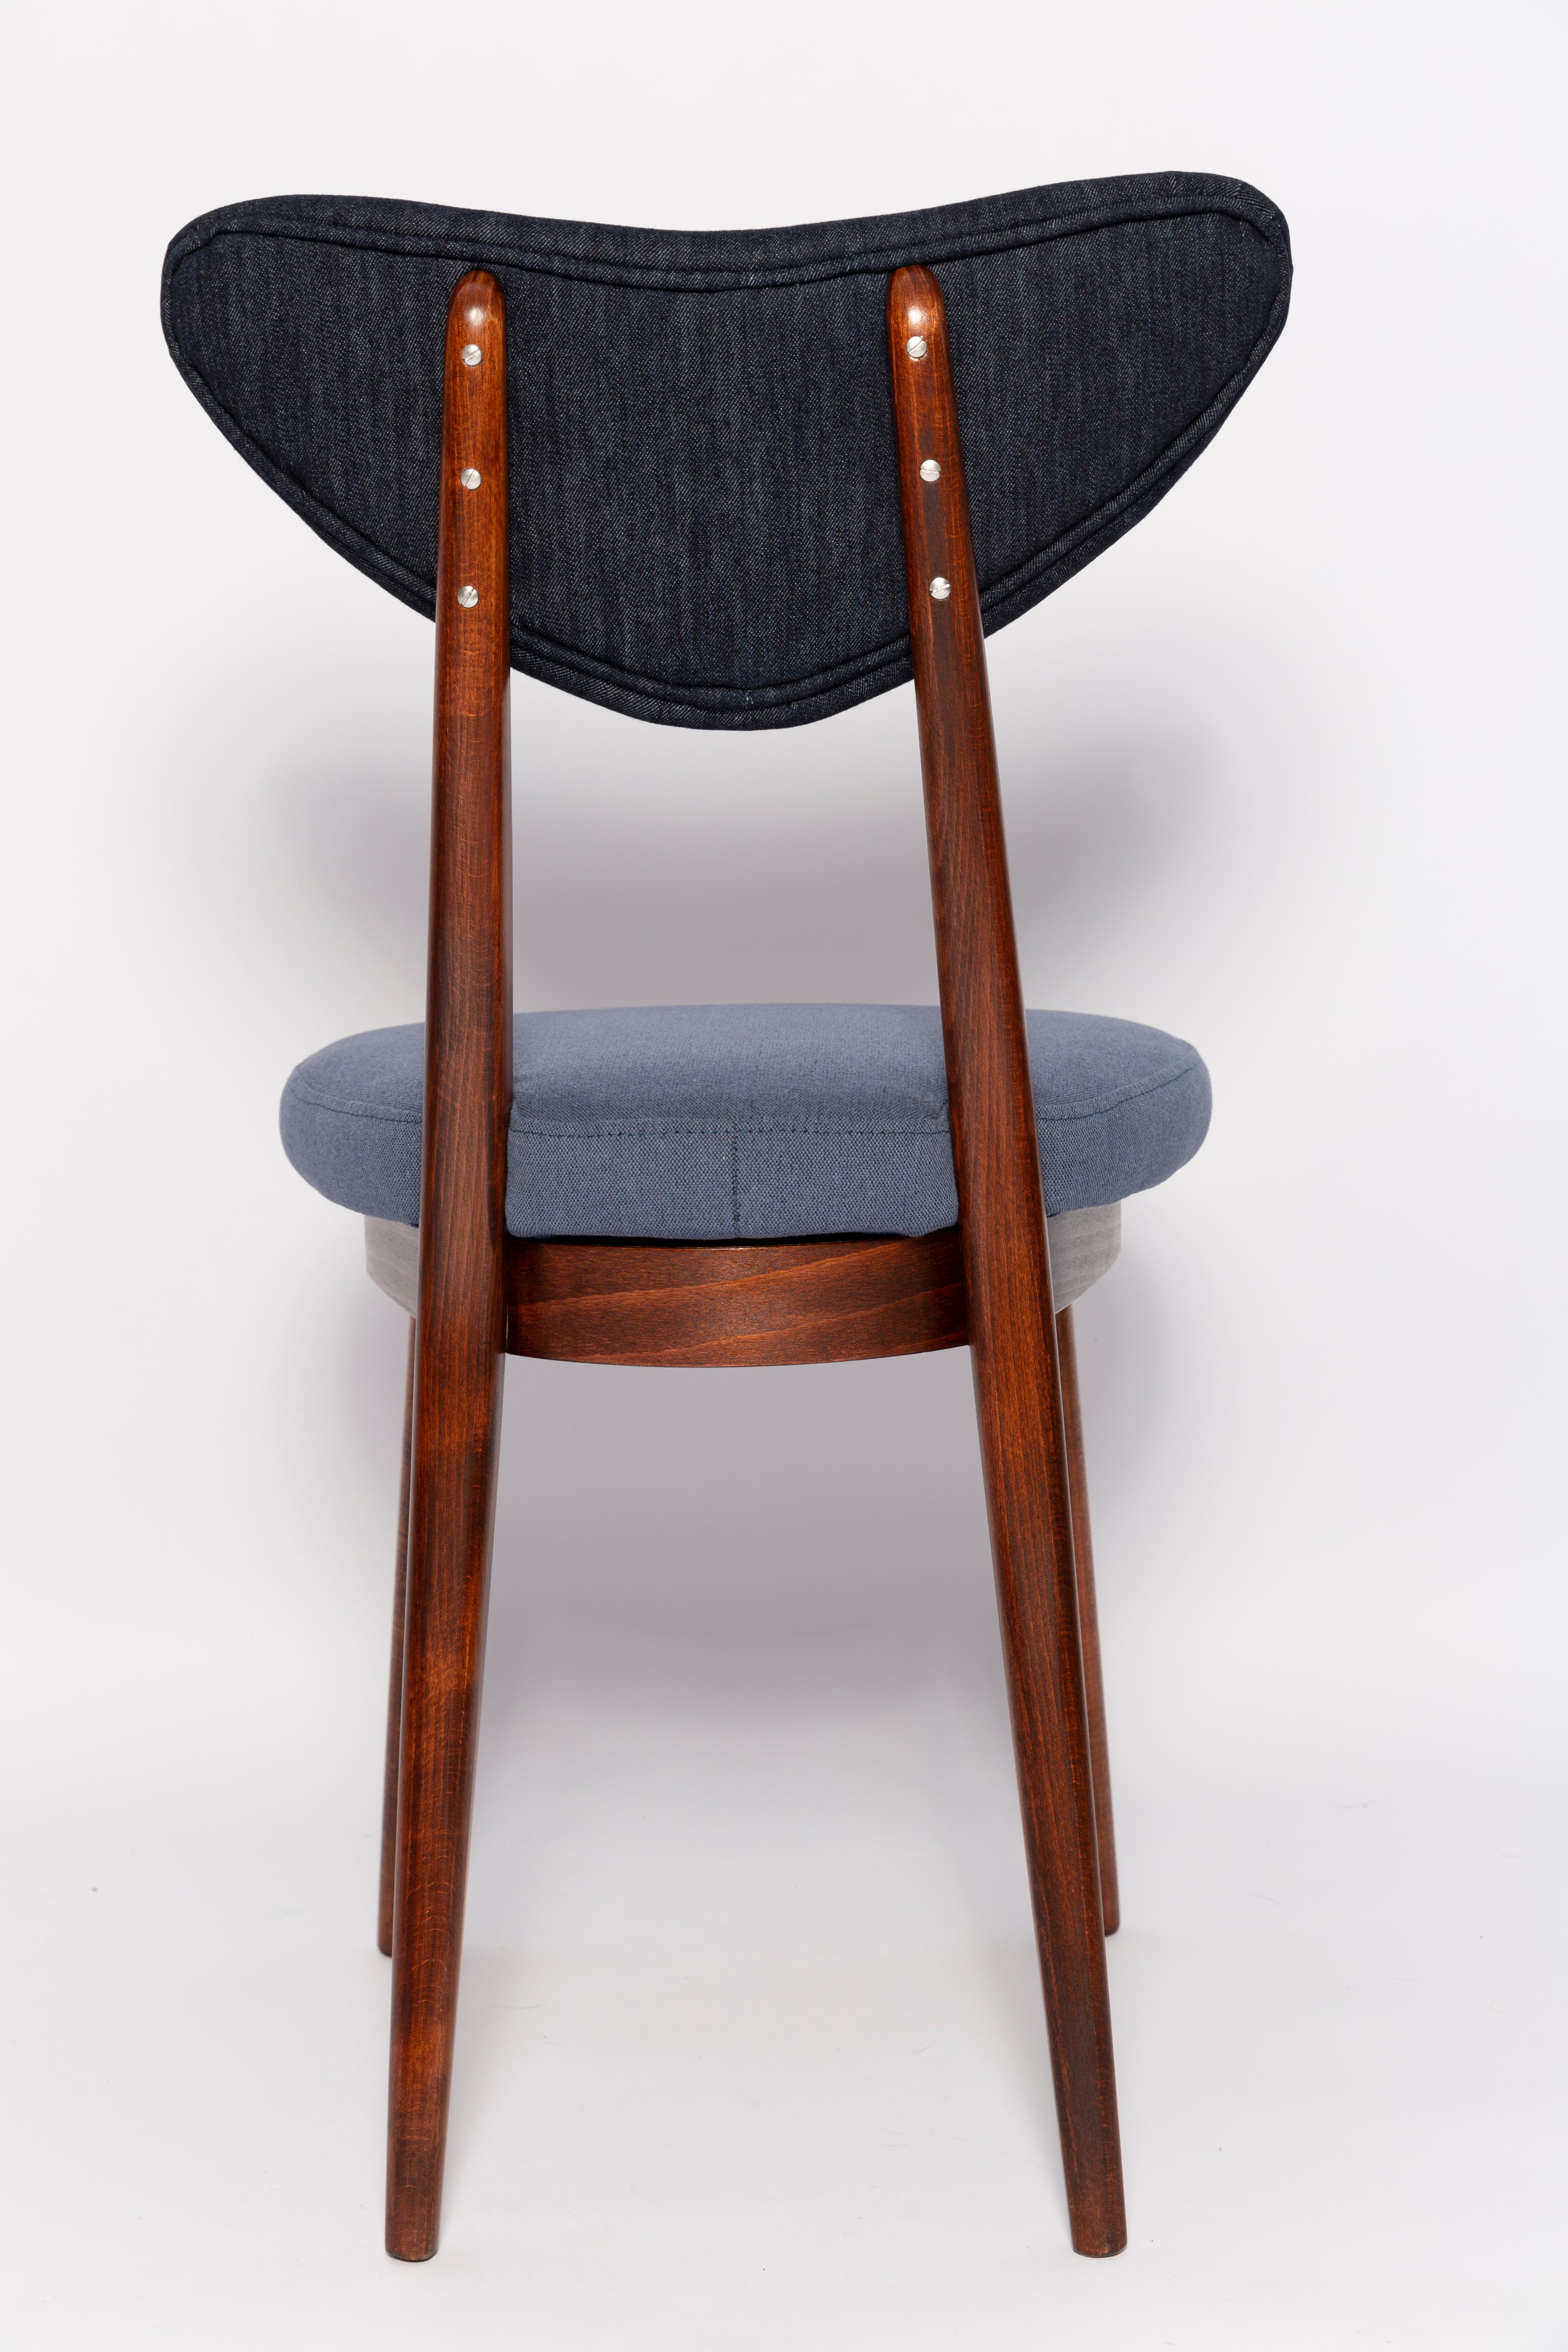 Velvet Midcentury Medium and Dark Blue Denim Heart Chair, Europe, 1960s For Sale